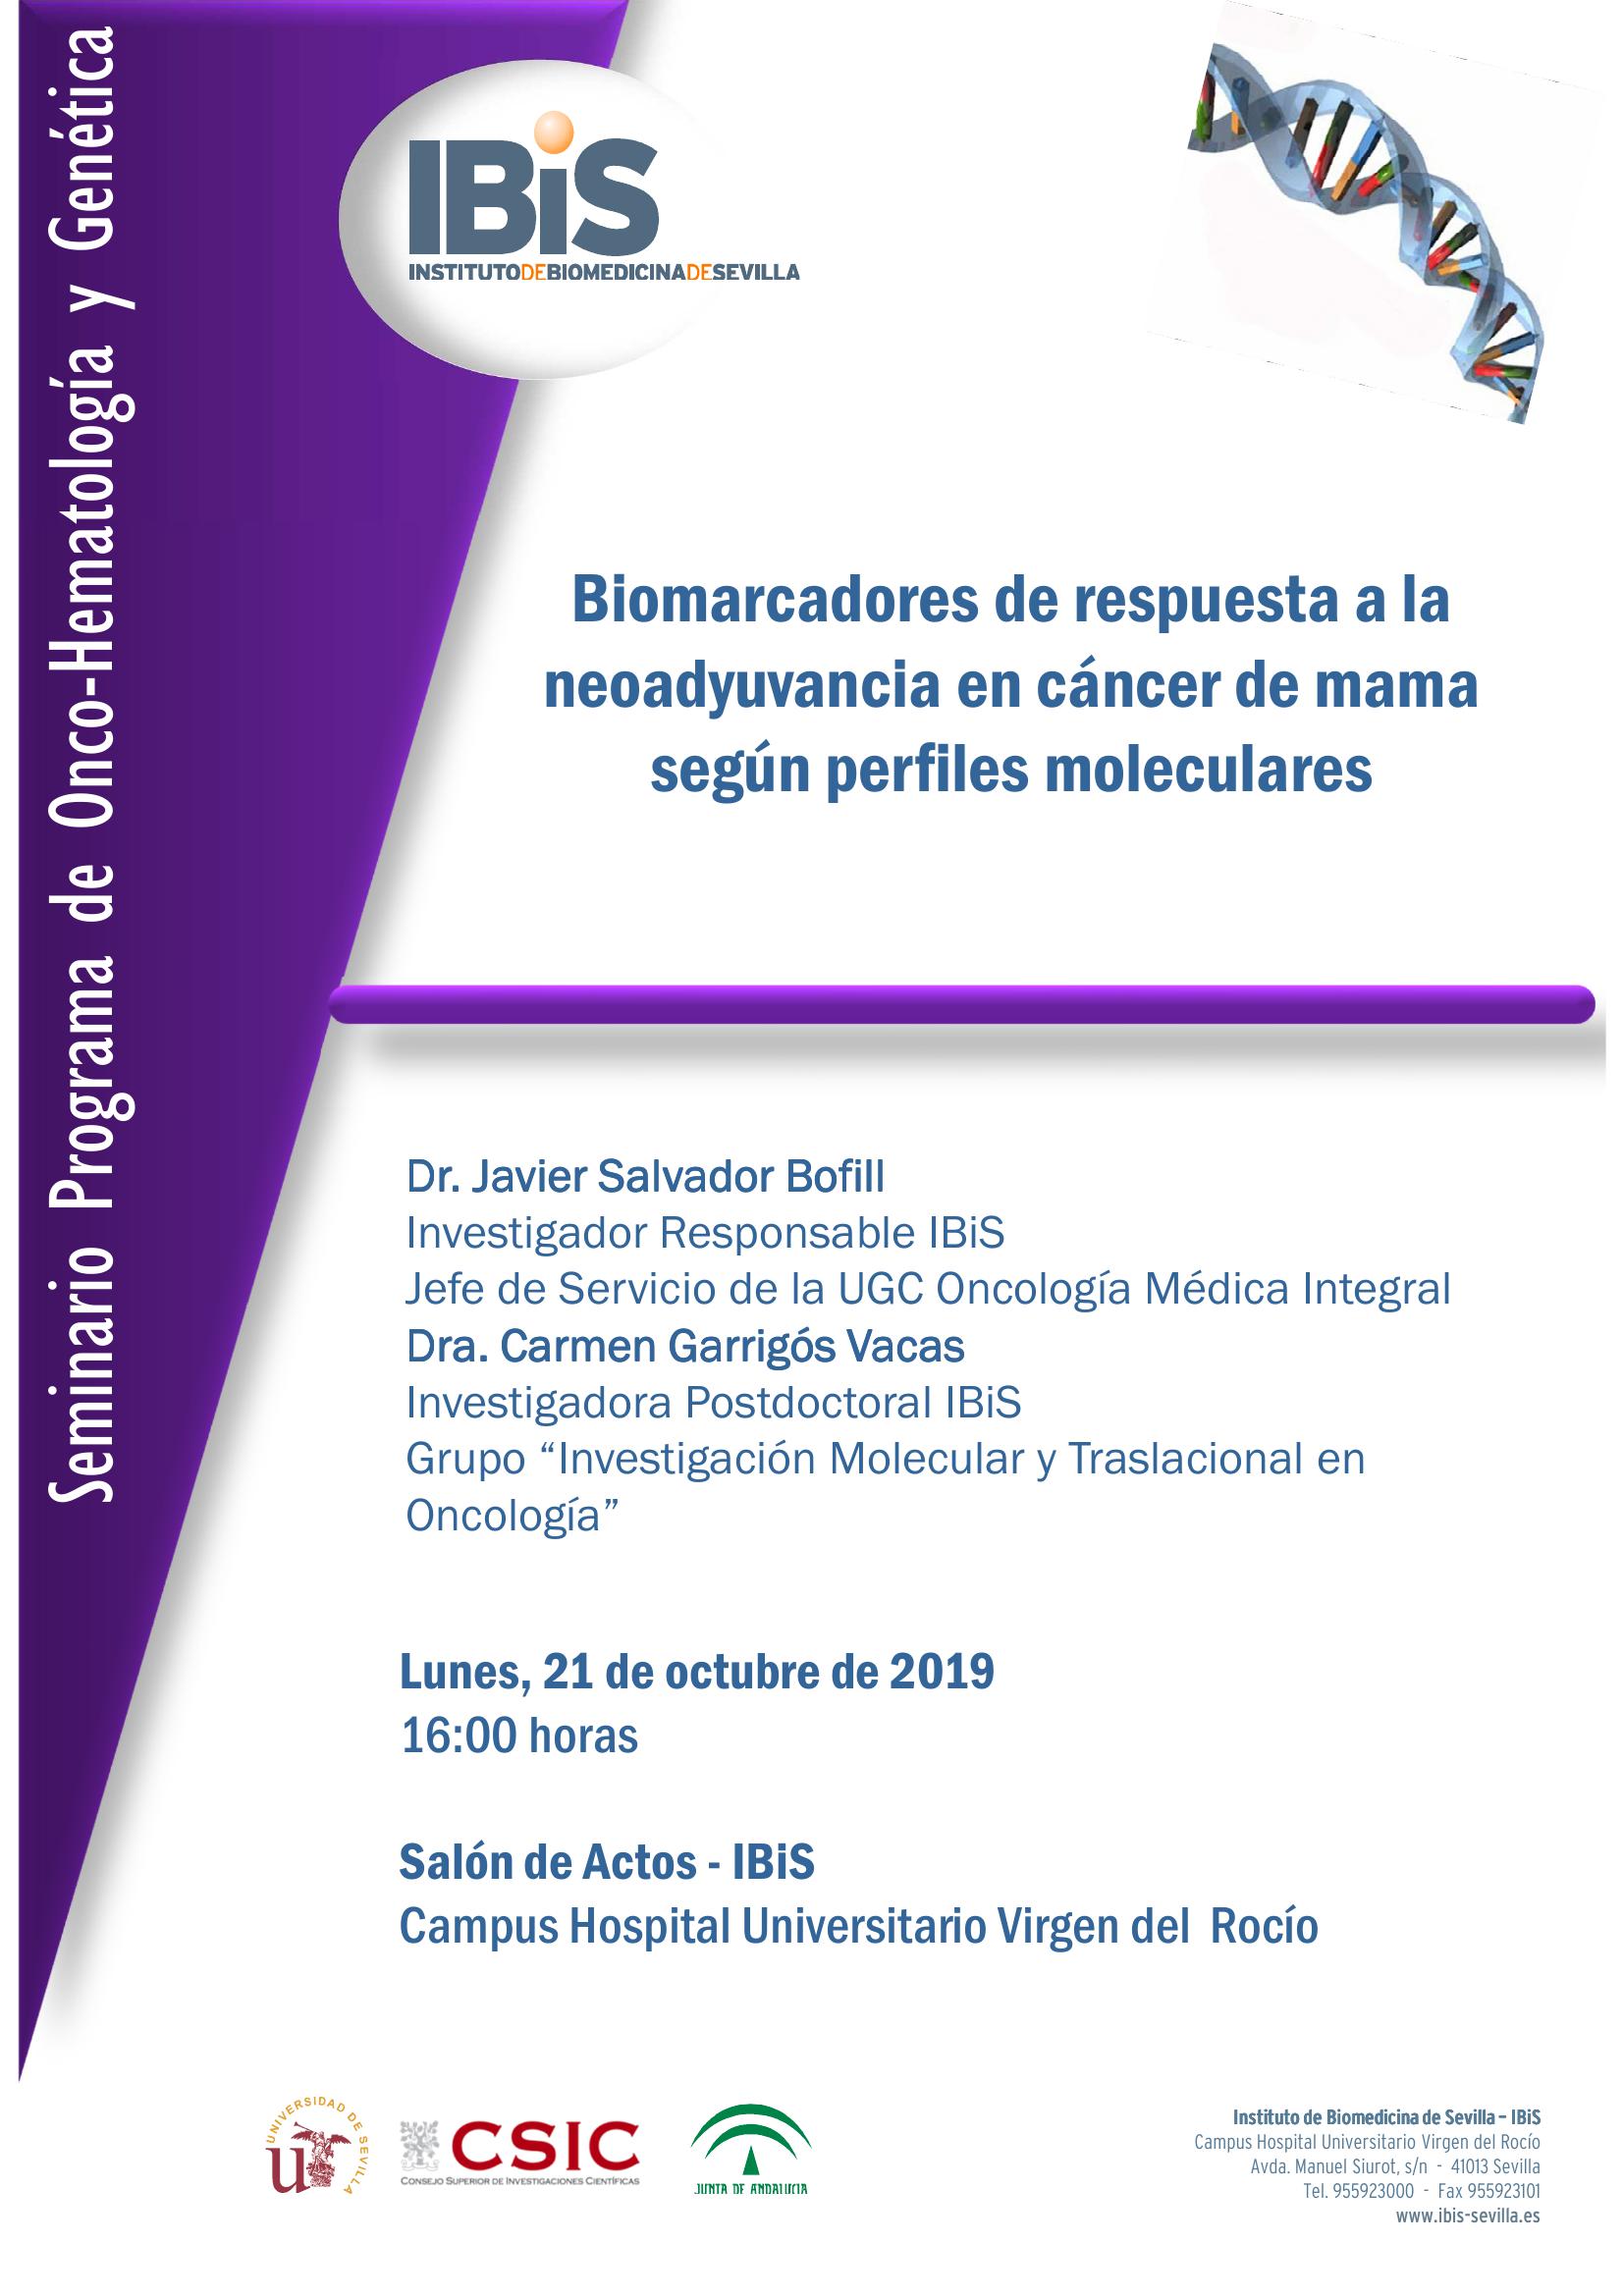 Poster: Biomarcadores de respuesta a la neoadyuvancia en cáncer de mama según perfiles moleculares